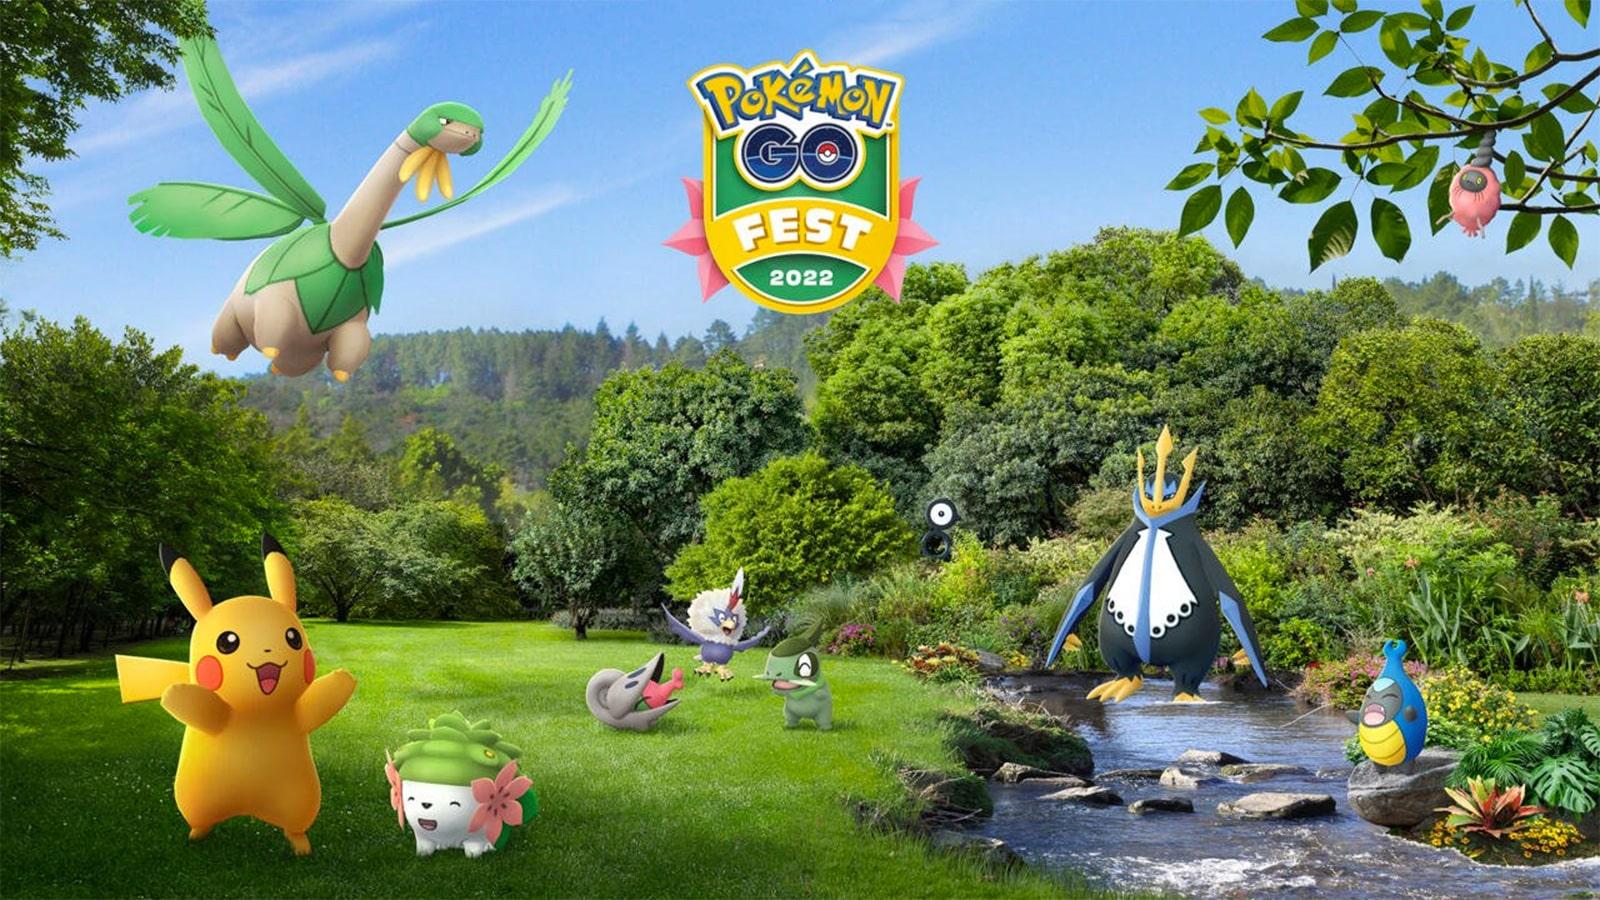 A poster for Pokemon Go Fest 2022